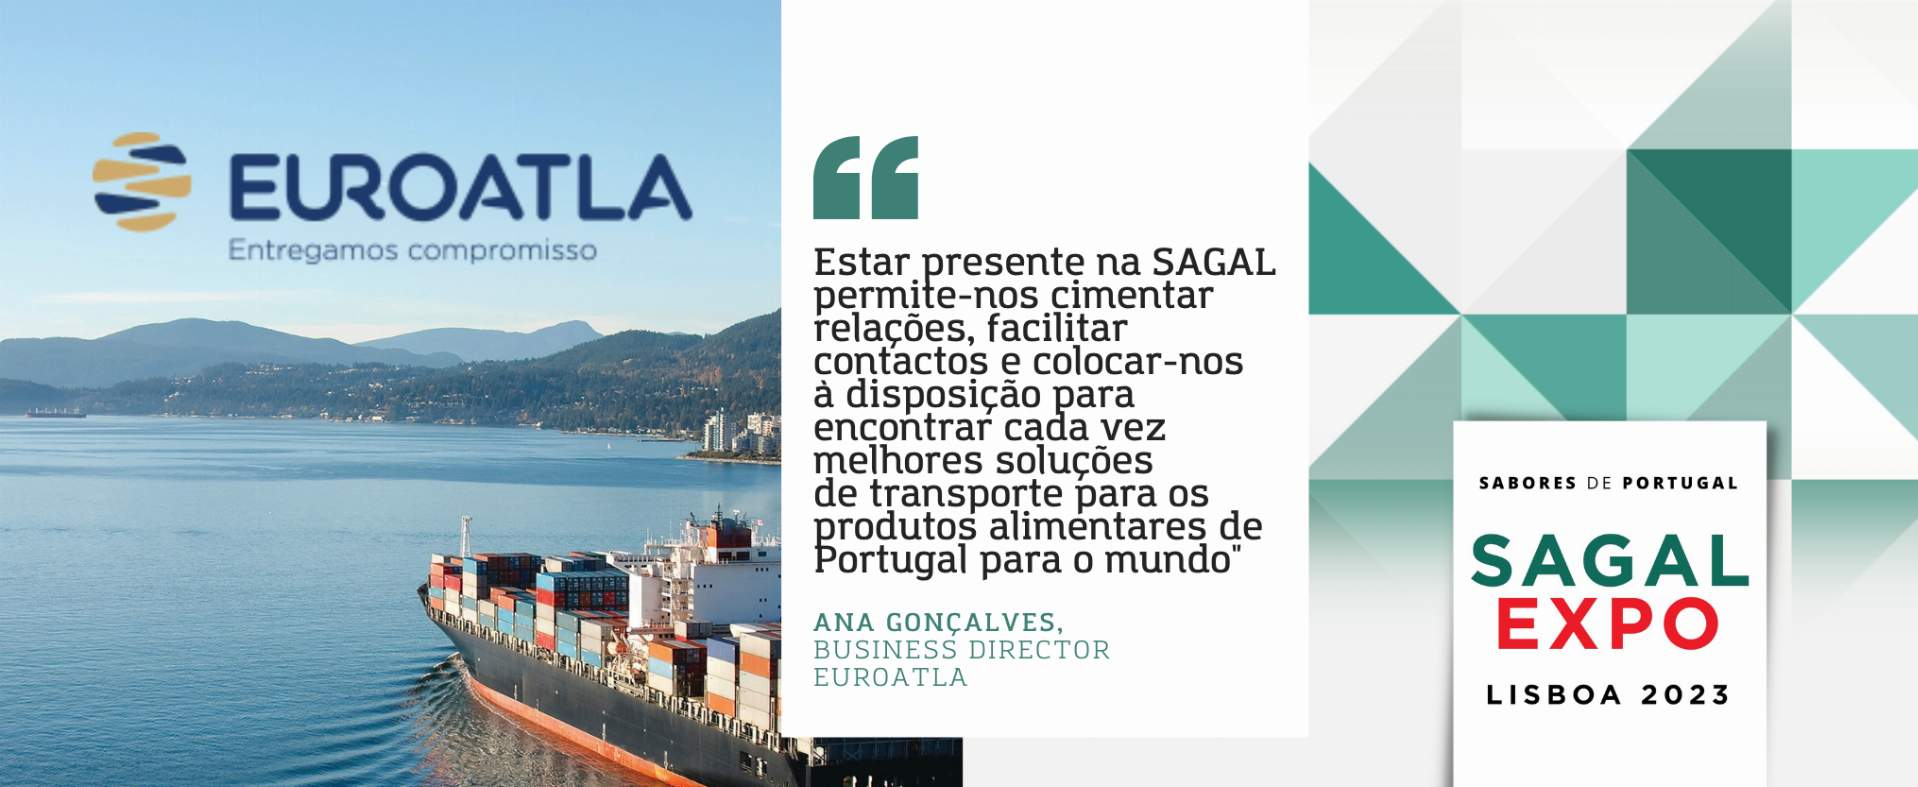 Euroatla: "Exponer en SAGAL nos permite estrechar relaciones, facilitar contactos y ponernos a disposición para encontrar cada vez mejores soluciones de transporte de productos alimentarios de Portugal al mundo